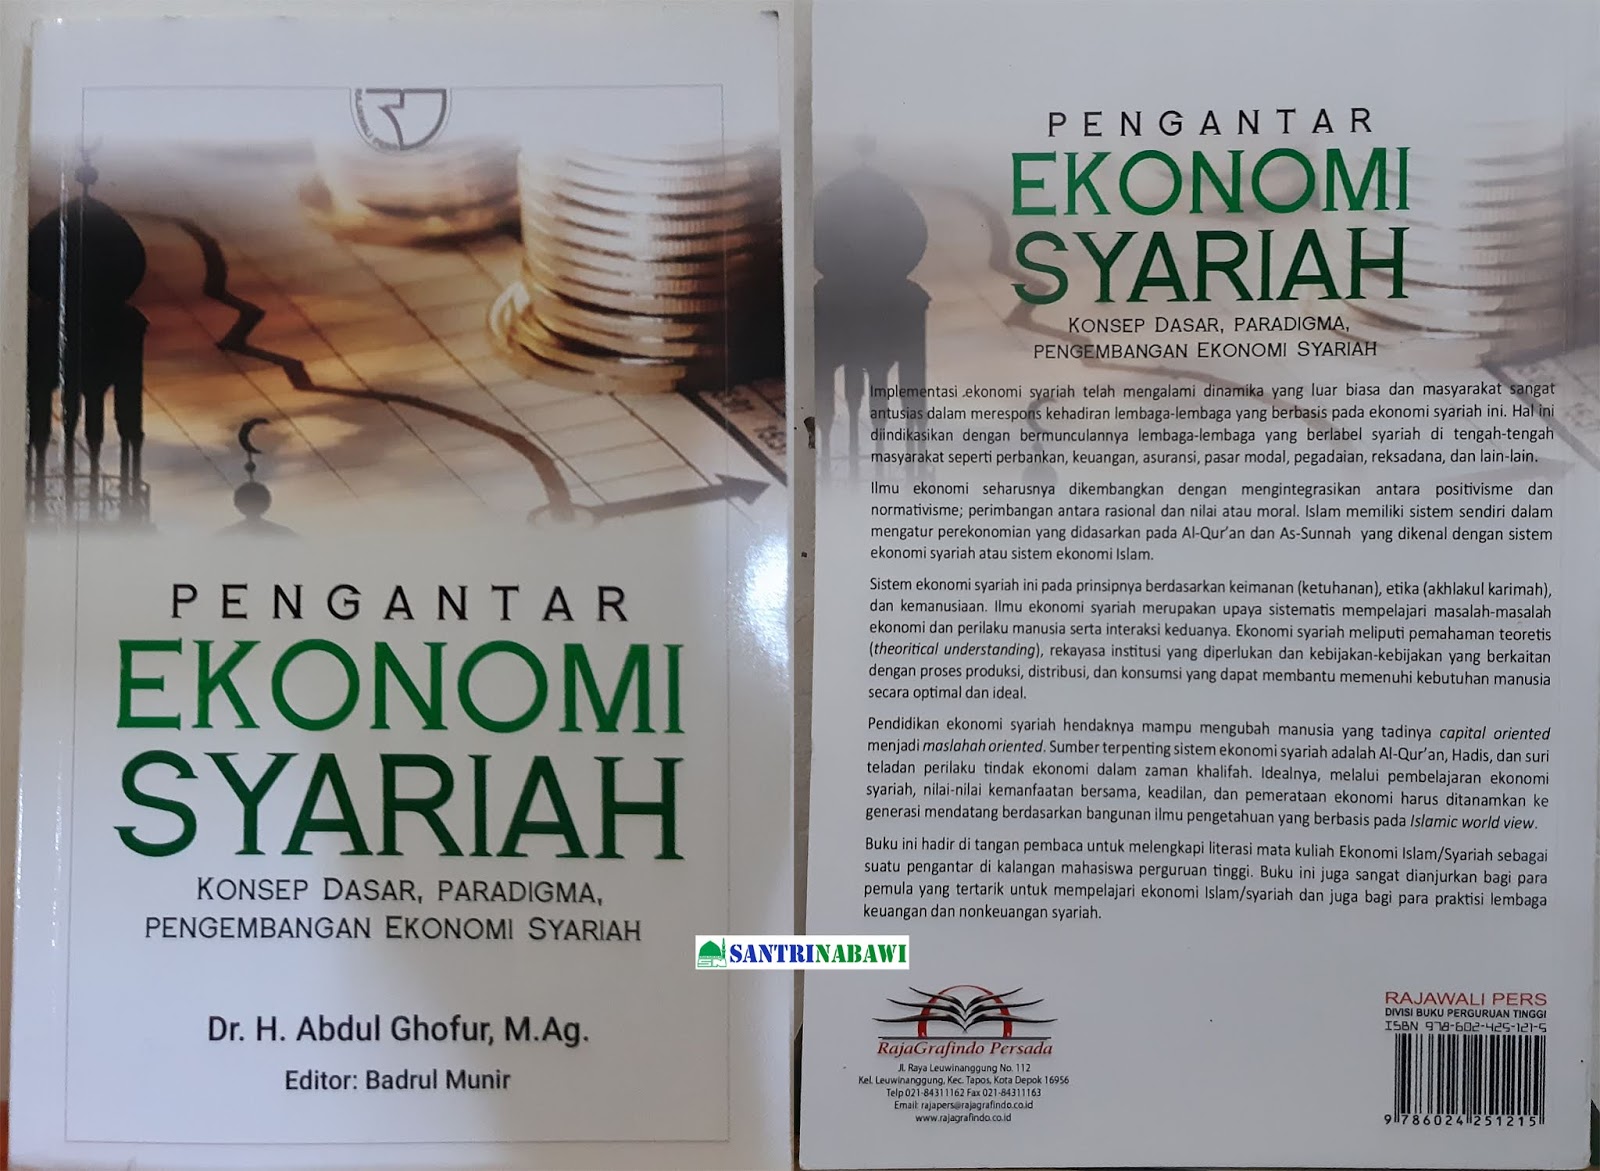 Buku Pengantar Ekonomi Syariah Abdul Ghofur Santri Nabawi Beasiswa Madinah Beasiswa Arab Saudi